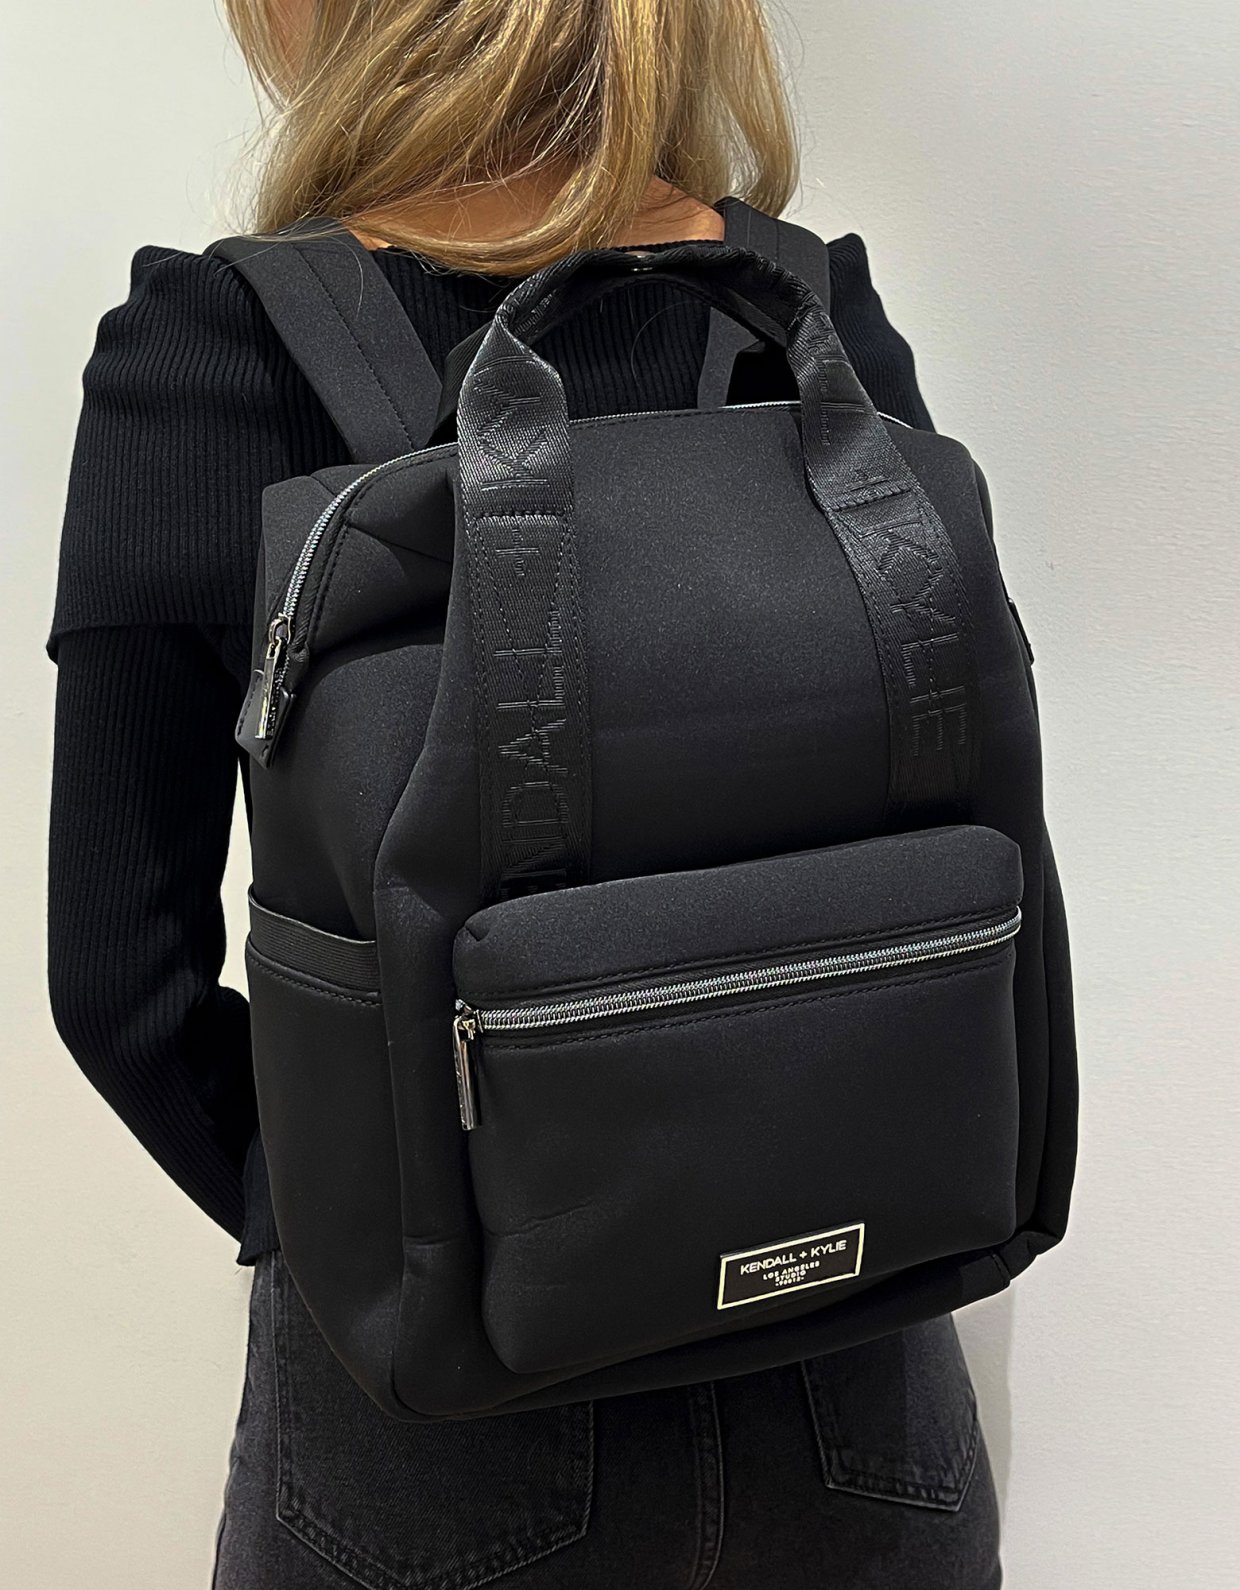 Kendall + Kylie Sebas backpack black